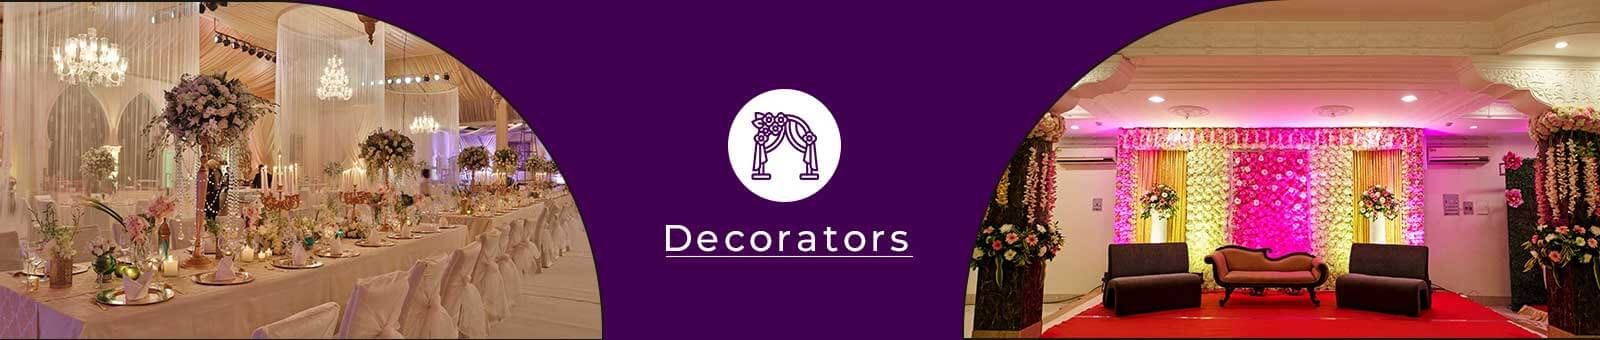 Decorators